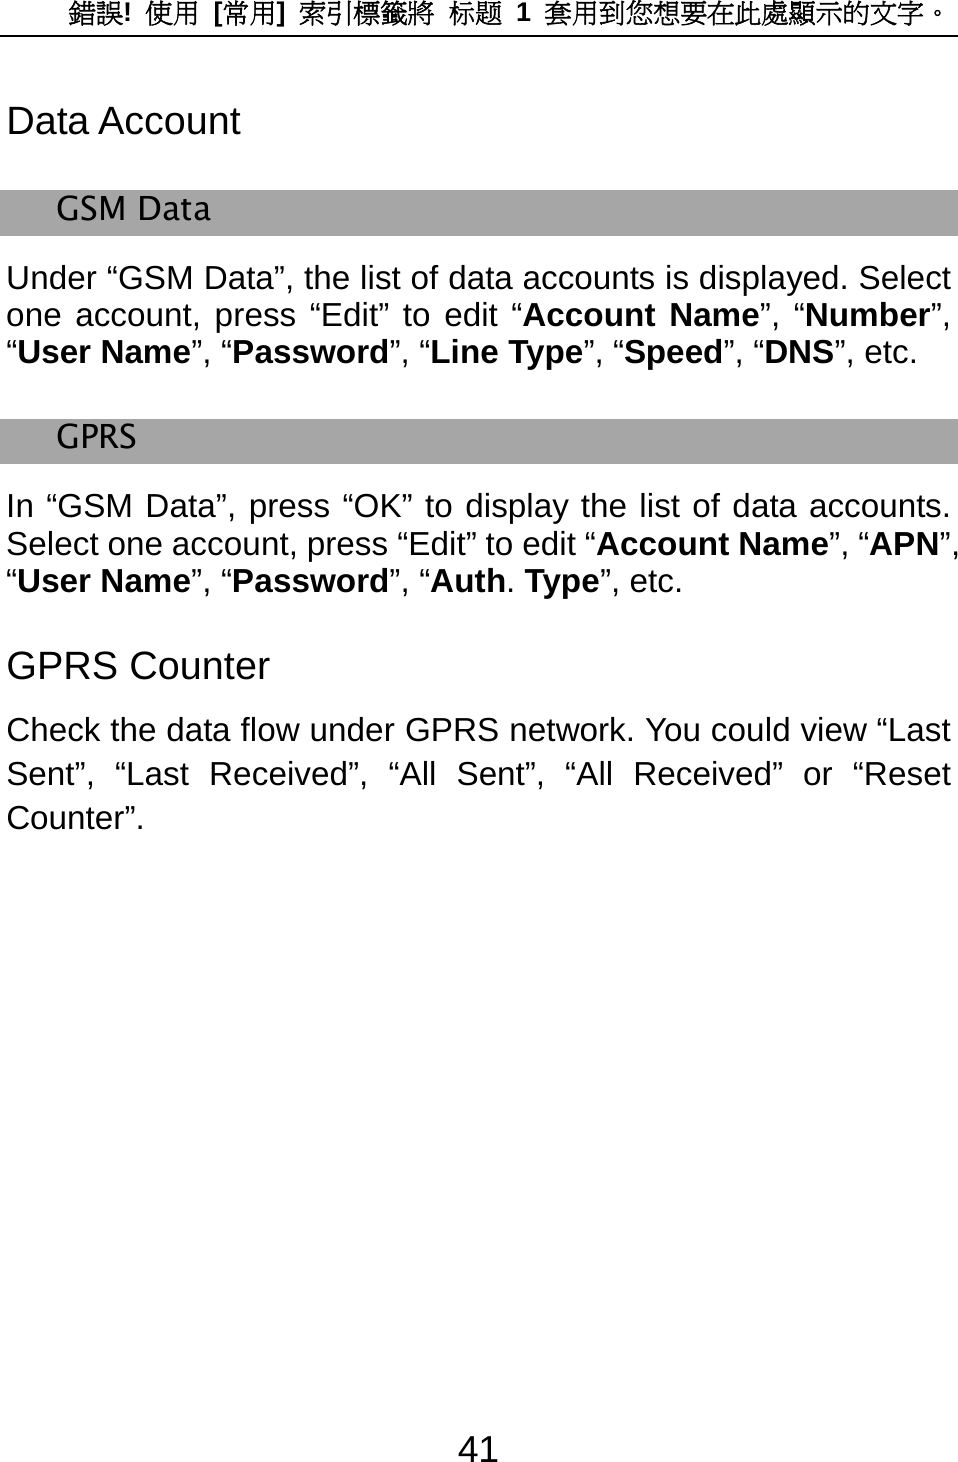 錯誤!  使用 [常用]  索引標籤將 标题 1 套用到您想要在此處顯示的文字。 41 Data Account GSM Data Under “GSM Data”, the list of data accounts is displayed. Select one account, press “Edit” to edit “Account Name”, “Number”, “User Name”, “Password”, “Line Type”, “Speed”, “DNS”, etc. GPRS In “GSM Data”, press “OK” to display the list of data accounts. Select one account, press “Edit” to edit “Account Name”, “APN”, “User Name”, “Password”, “Auth. Type”, etc. GPRS Counter Check the data flow under GPRS network. You could view “Last Sent”, “Last Received”, “All Sent”, “All Received” or “Reset Counter”. 